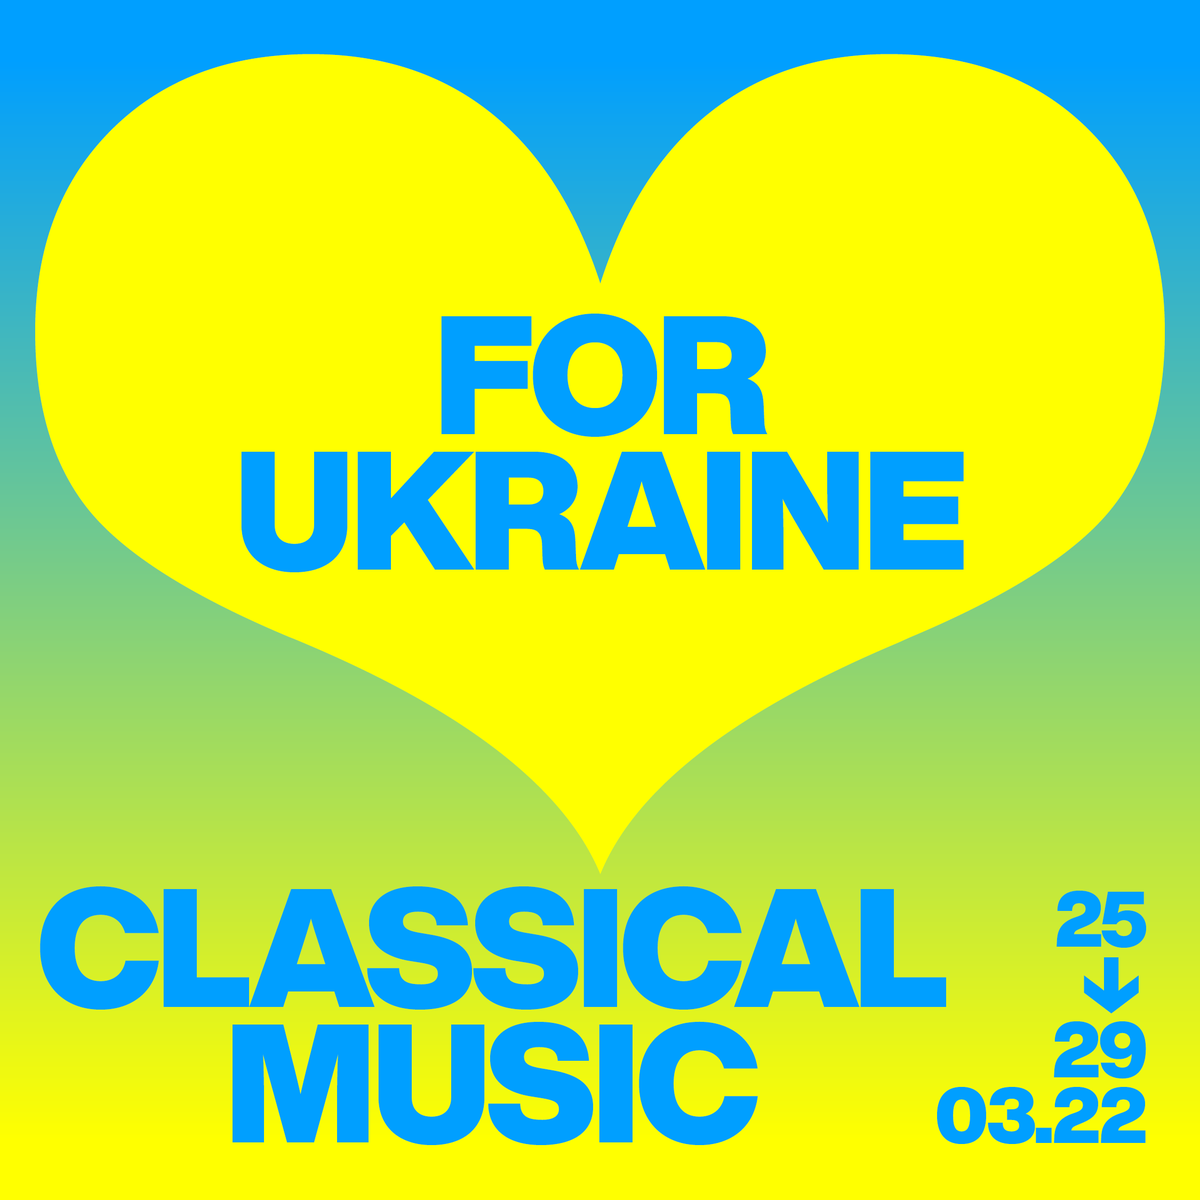 Uit solidariteit met de Oekraïense bevolking en omdat klassieke muziek verbindt en troost, zetten #Flagey en zes belgische culturele actoren samen hun schouders onder ‘Classical Music for Ukraine’, een grootschalige benefiet ten voordele van #Oekraïne1212 bit.ly/nl-ClassicalMu…